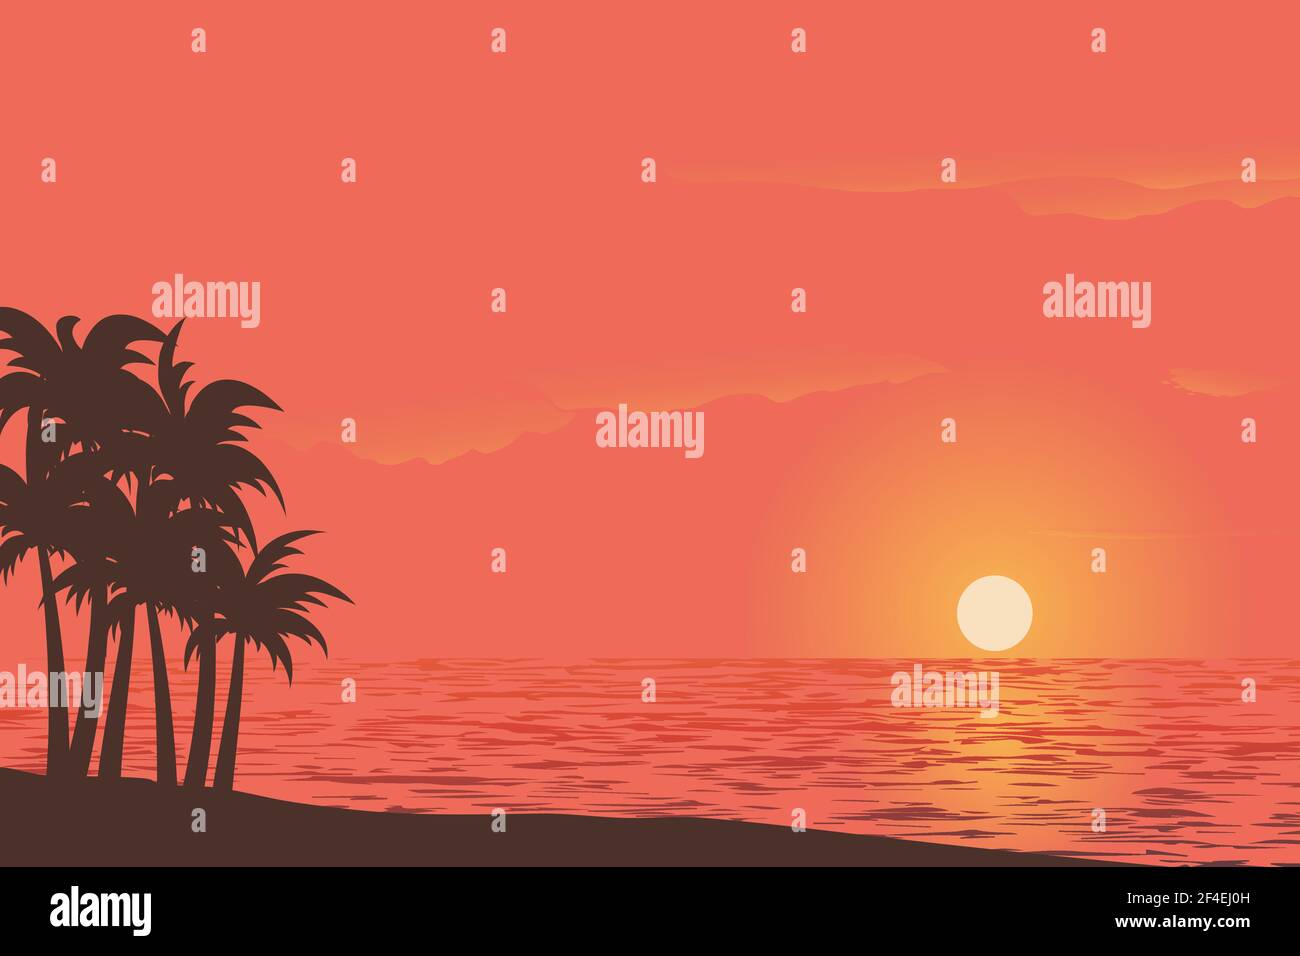 Illustration vectorielle de la vue du coucher du soleil sur un magnifique ciel avec paume arbres sur une plage de sable avec un fond de couleur dégradé Illustration de Vecteur